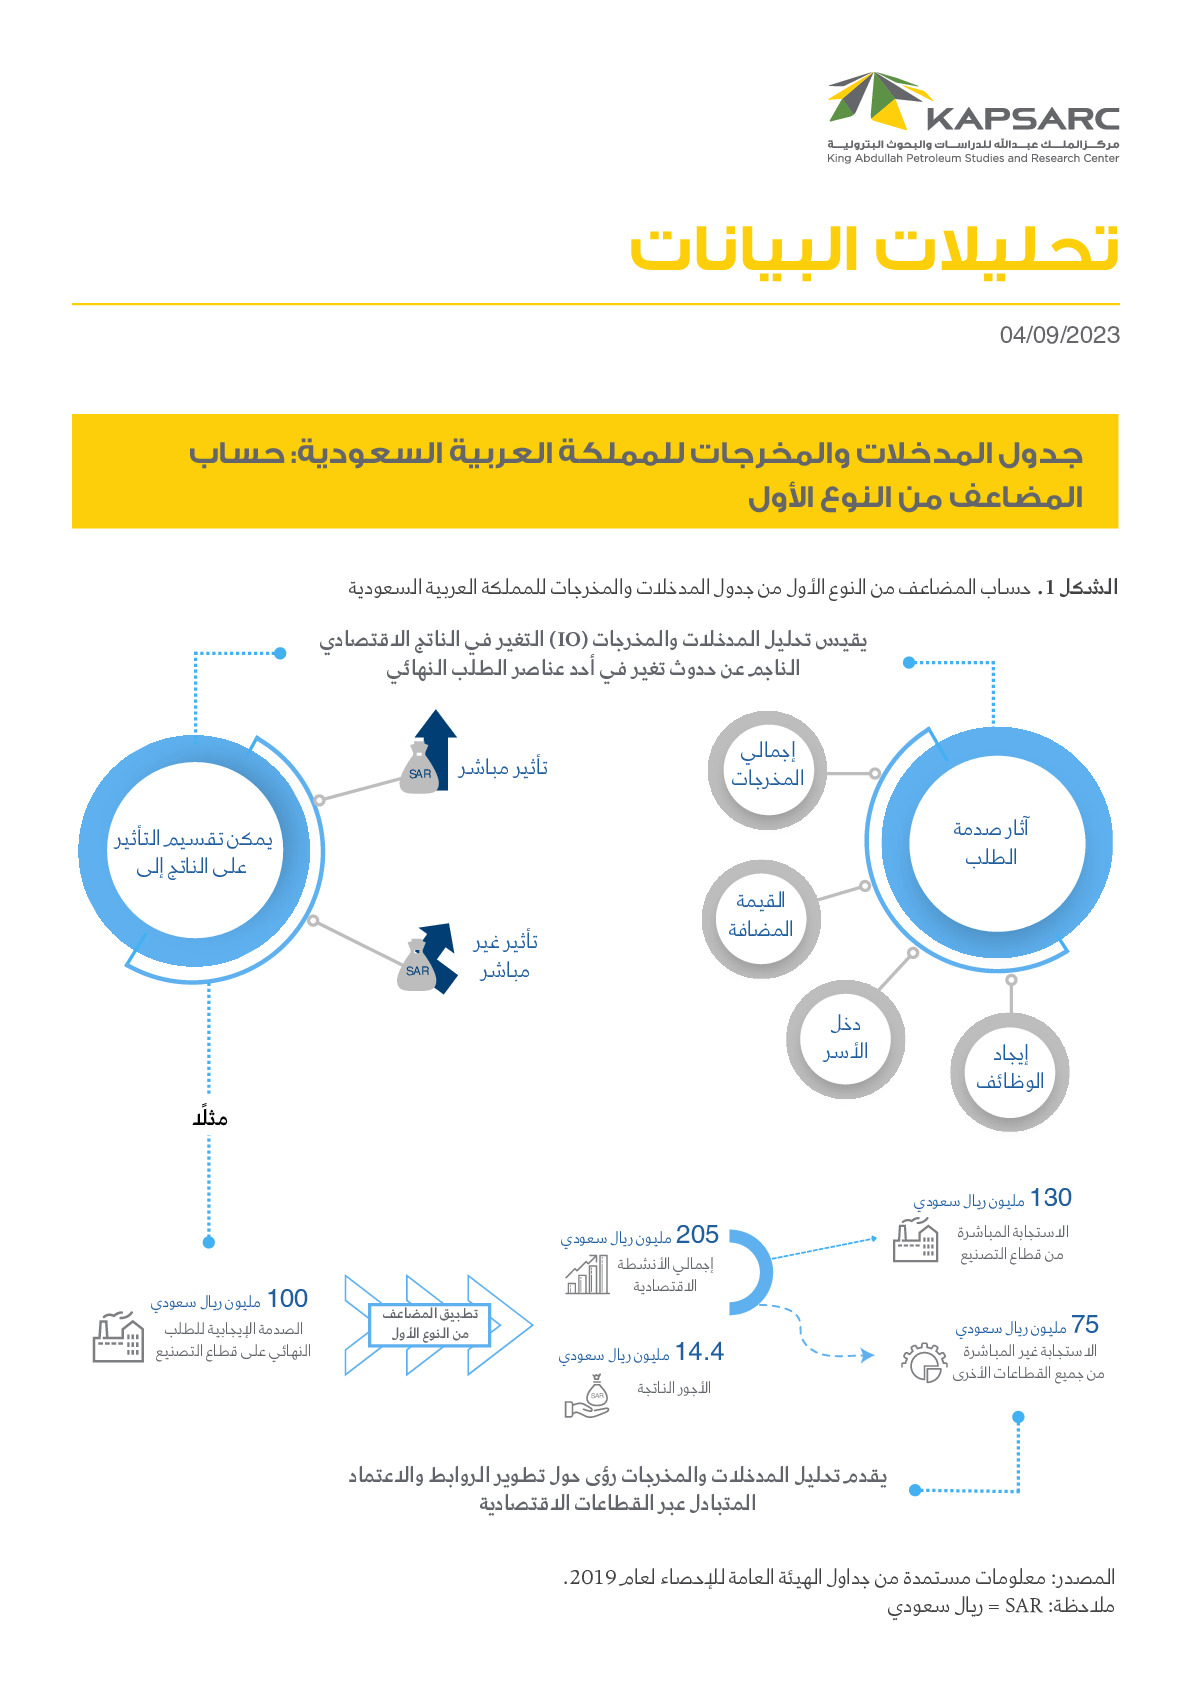 جدول المدخلات والمخرجات للمملكة العربية السعودية: حساب المضاعف من النوع الأول